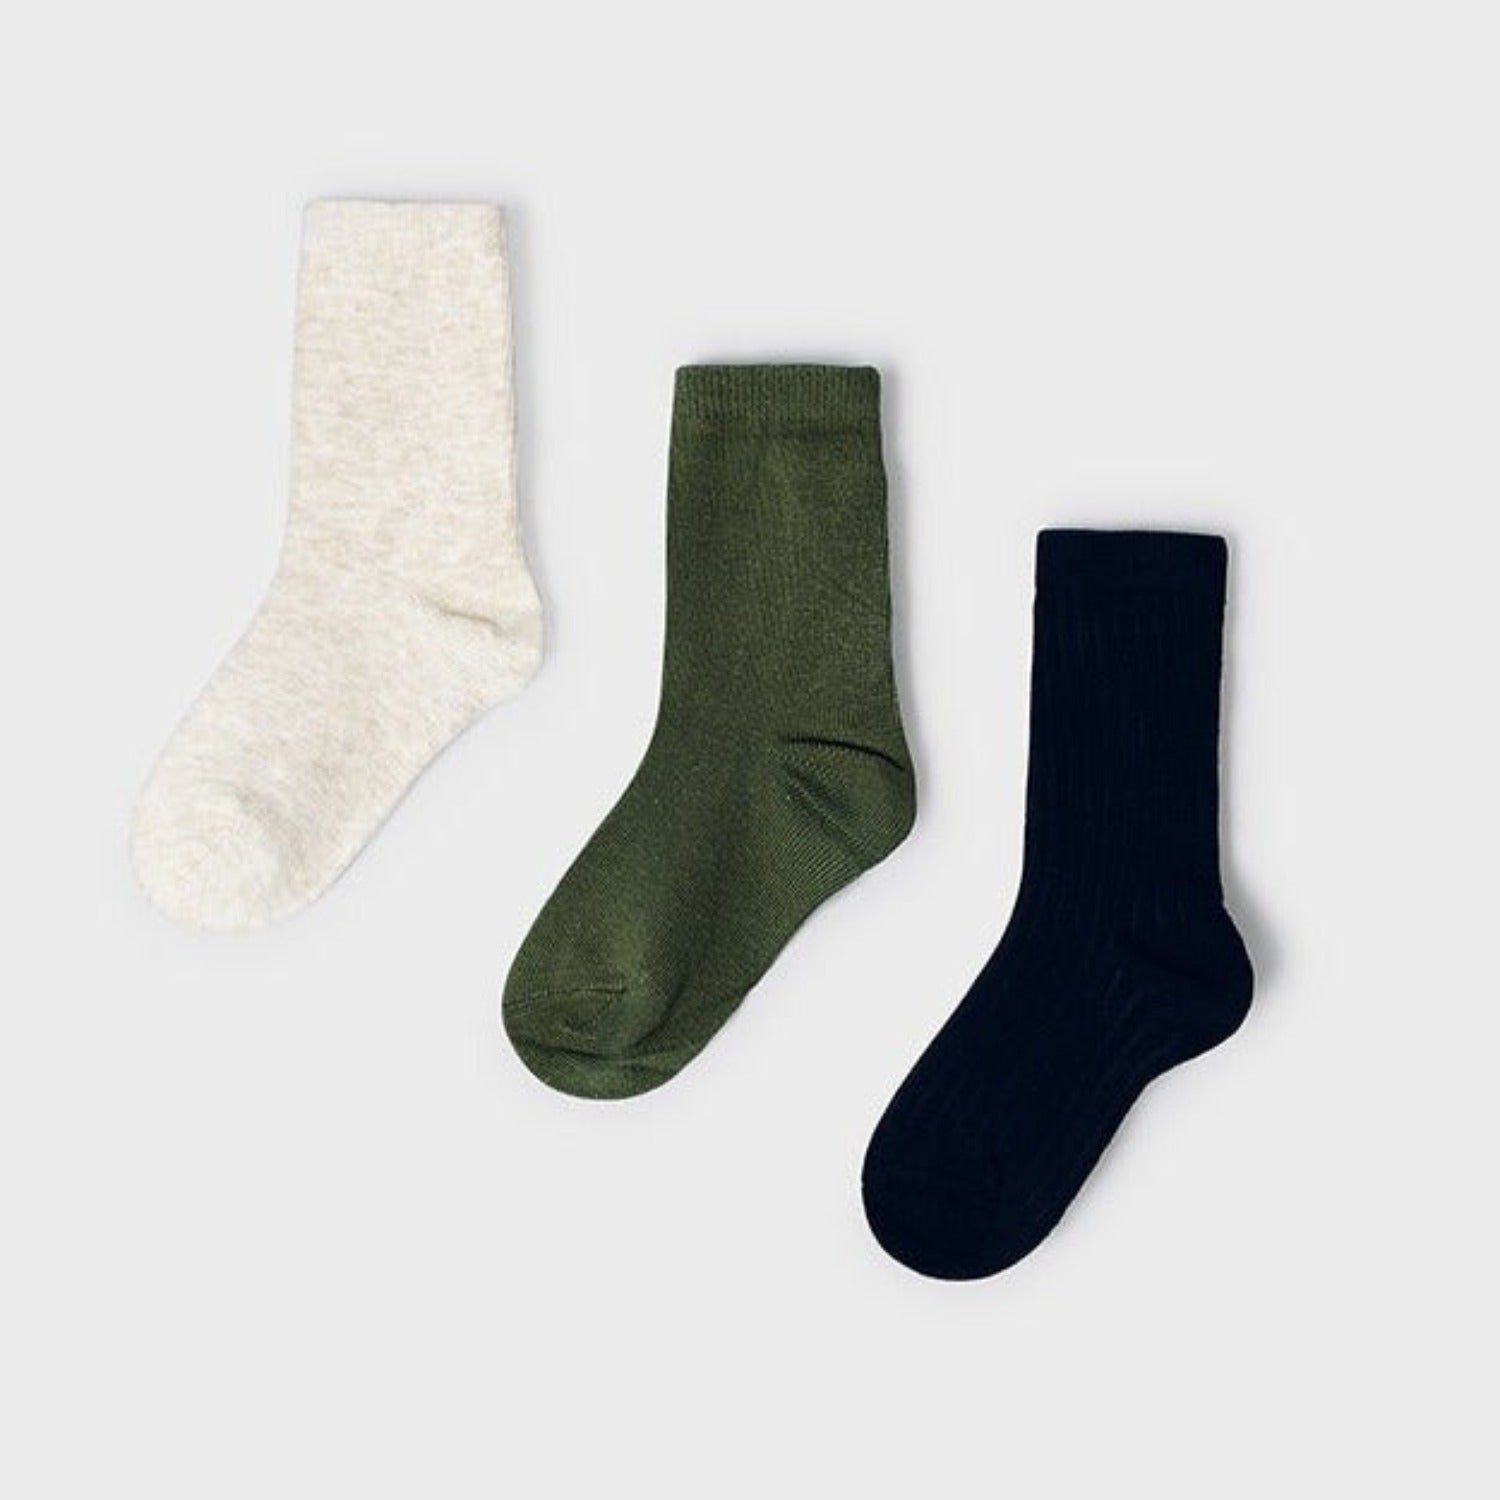 3 Pack Socks, Green, Navy, Cream